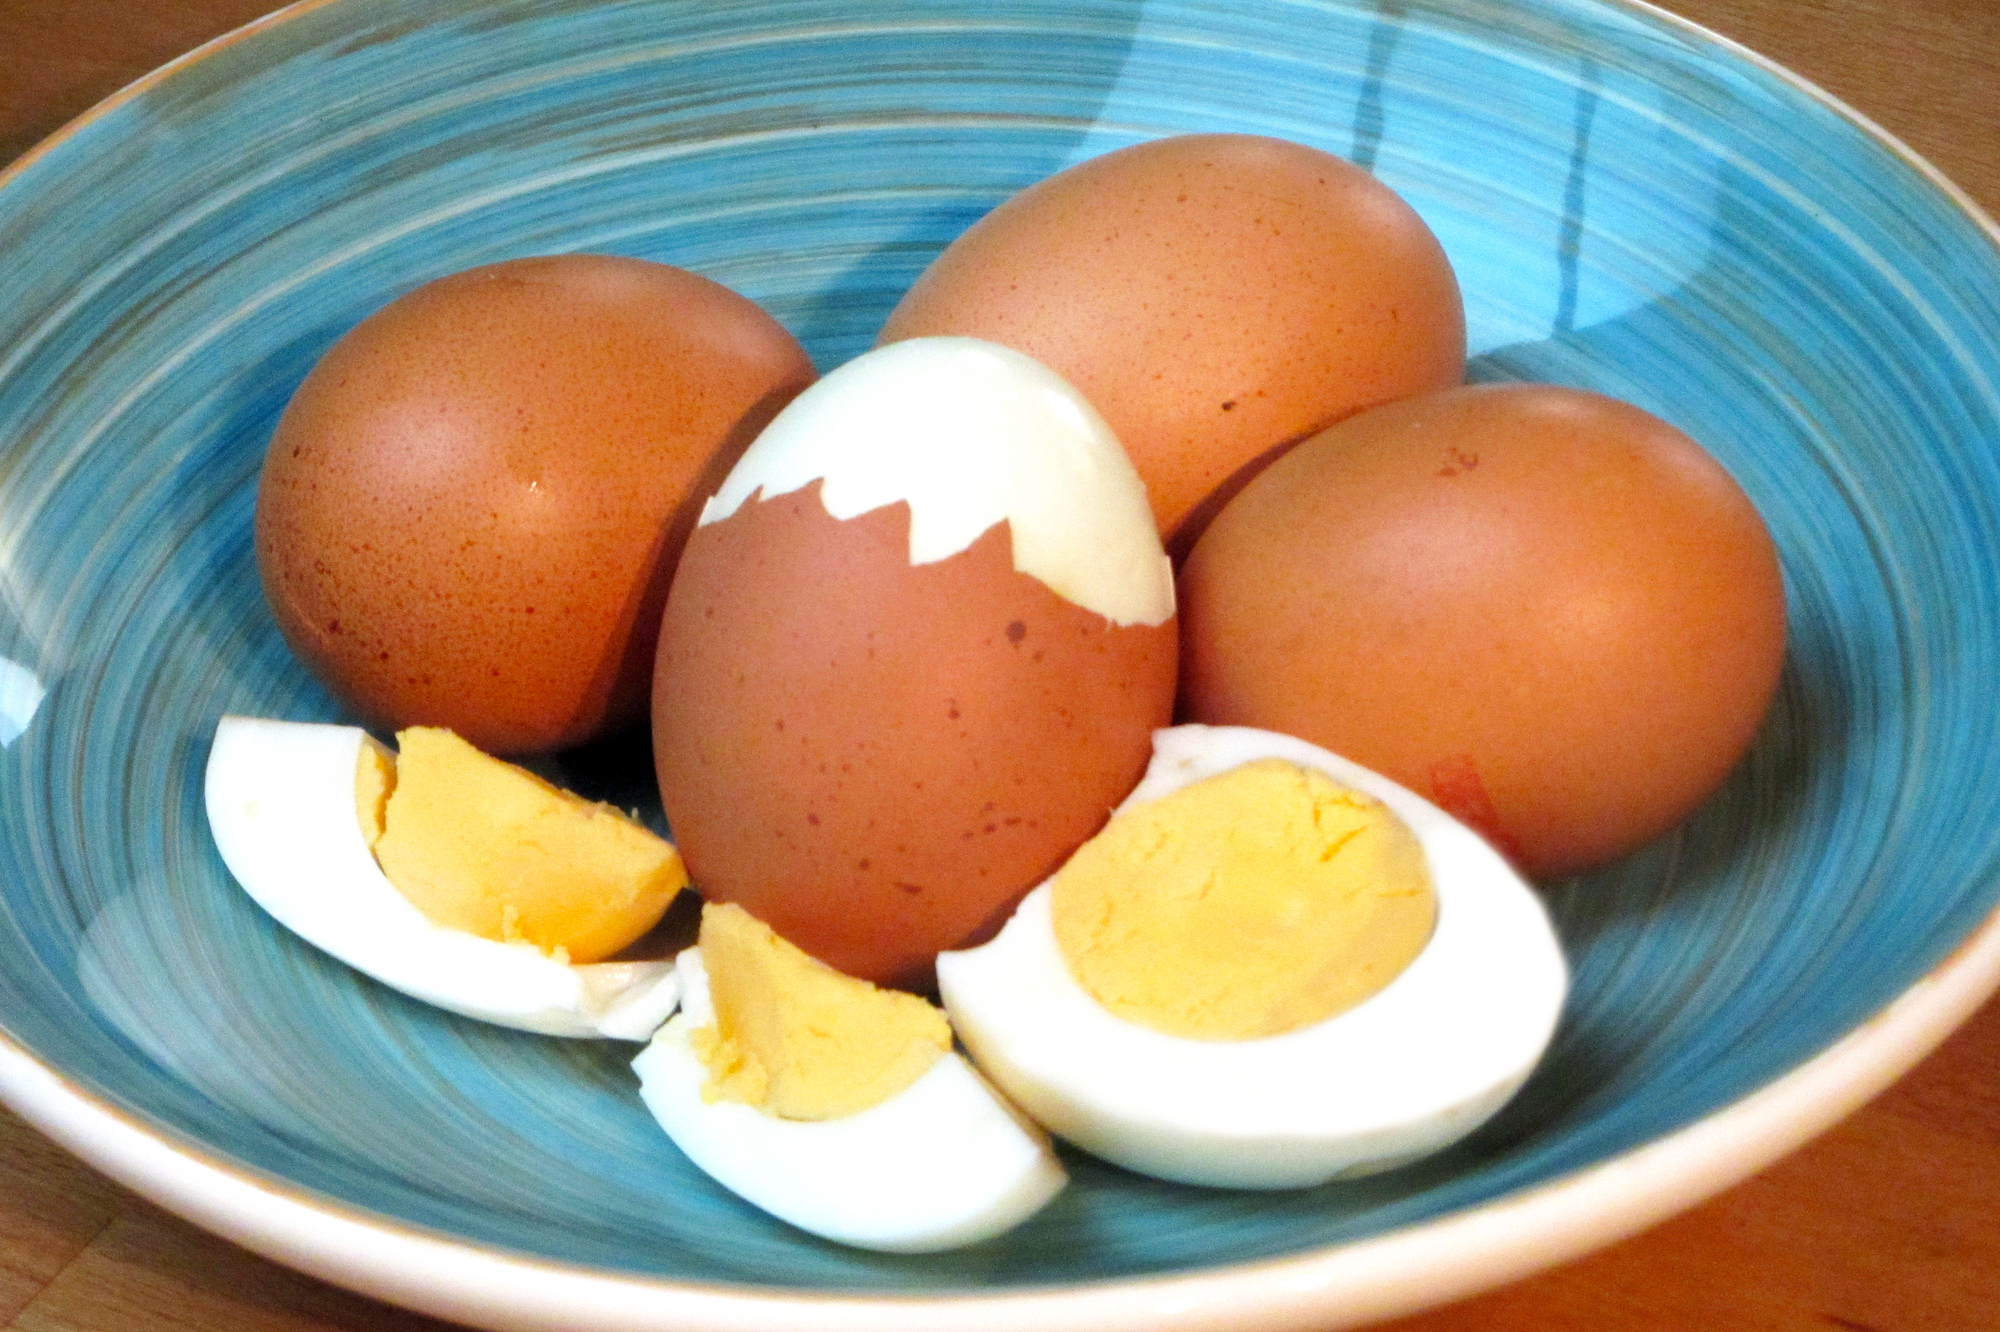 Hardgekookte eieren